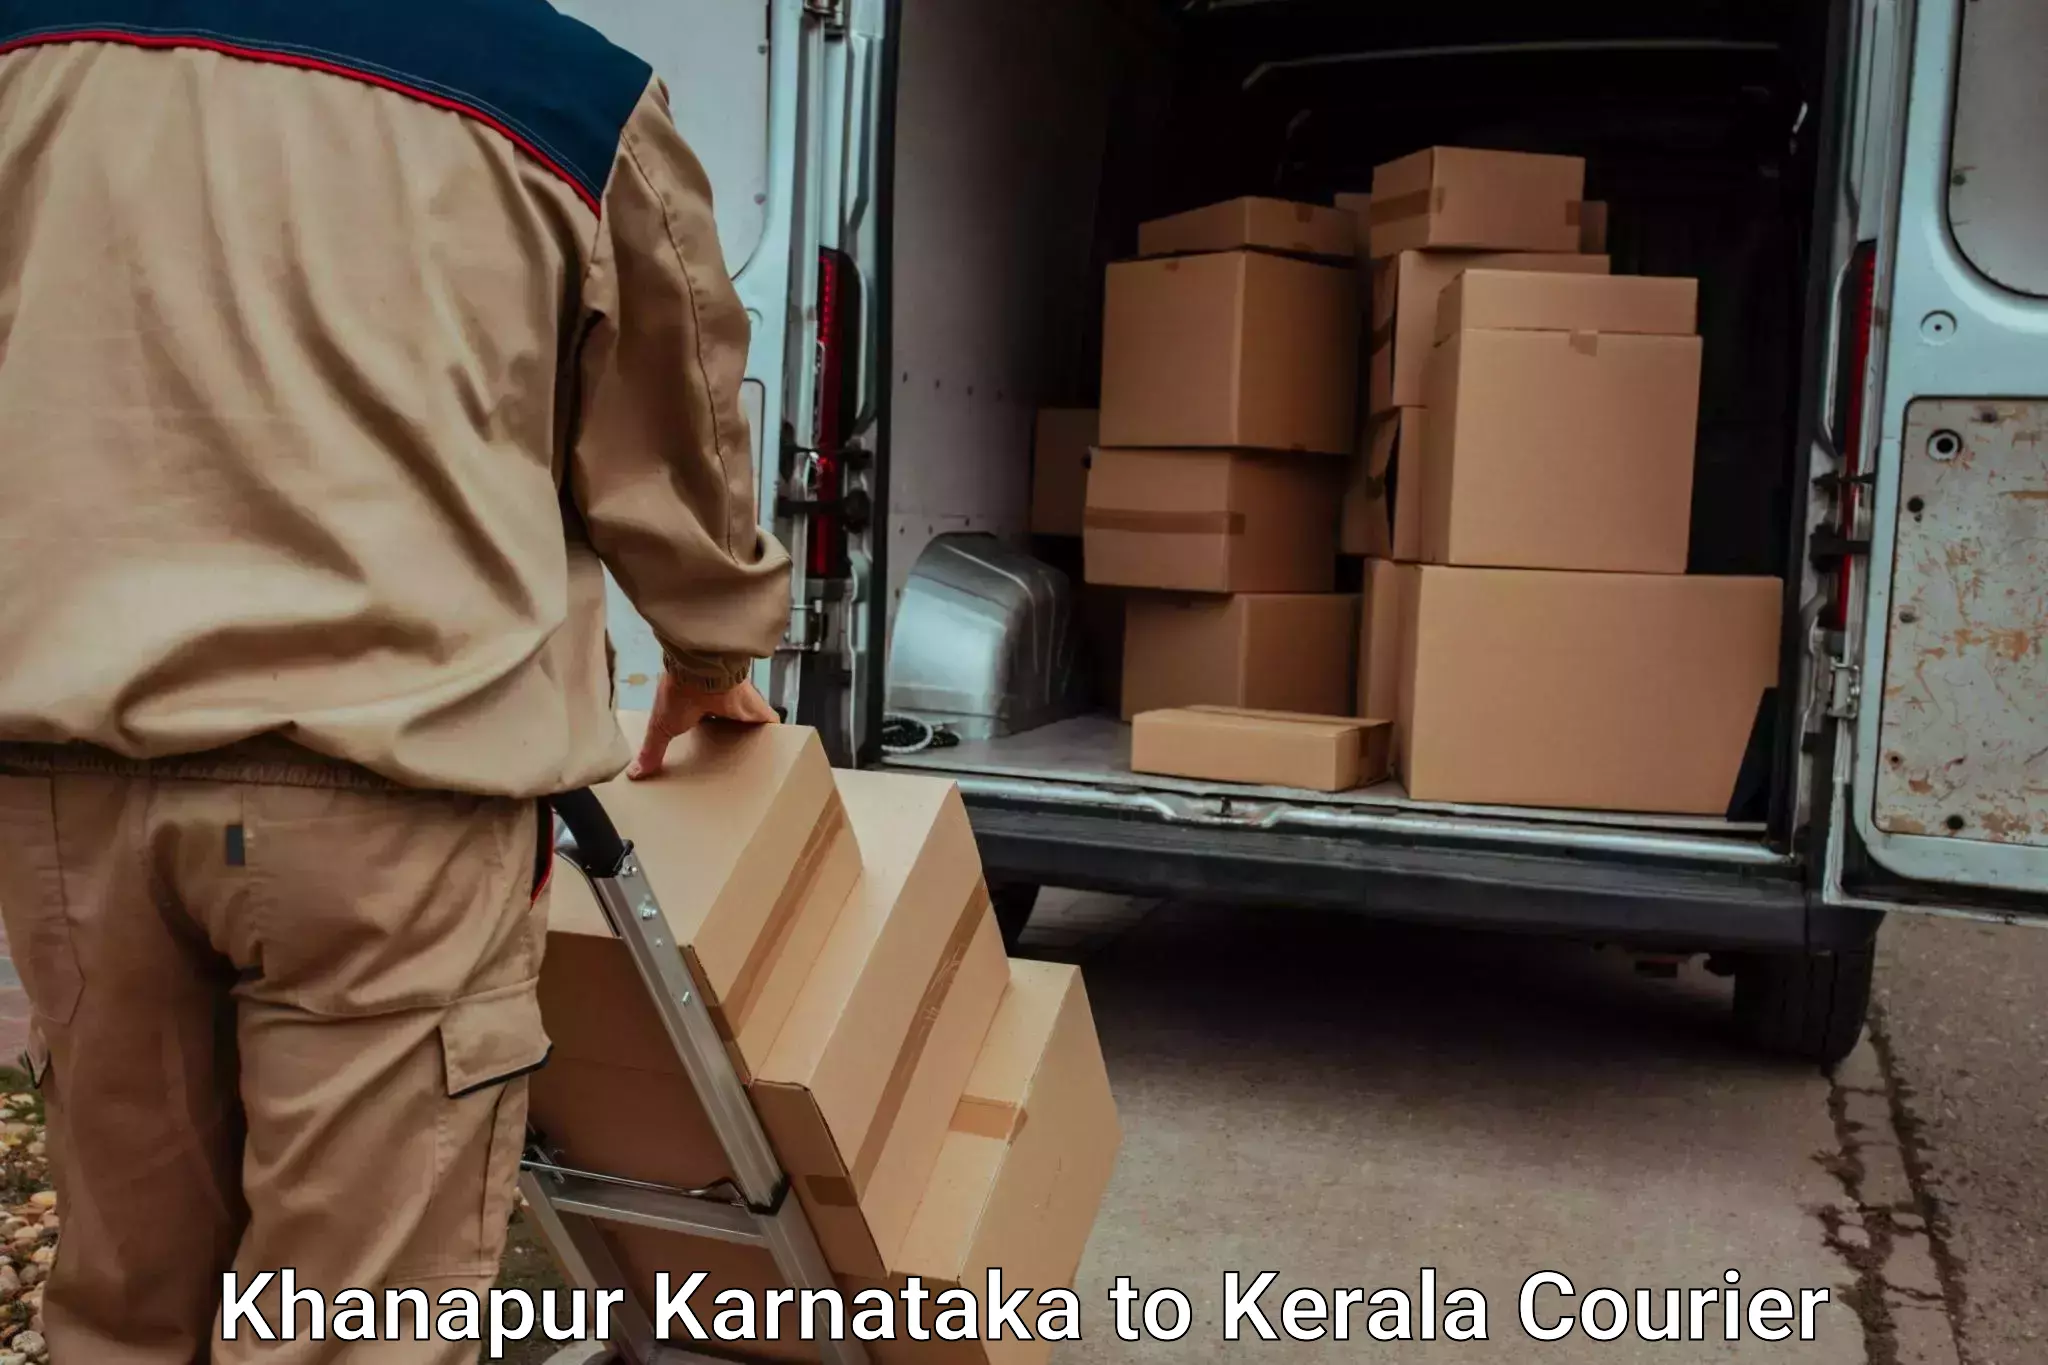 Baggage shipping quotes Khanapur Karnataka to Cochin